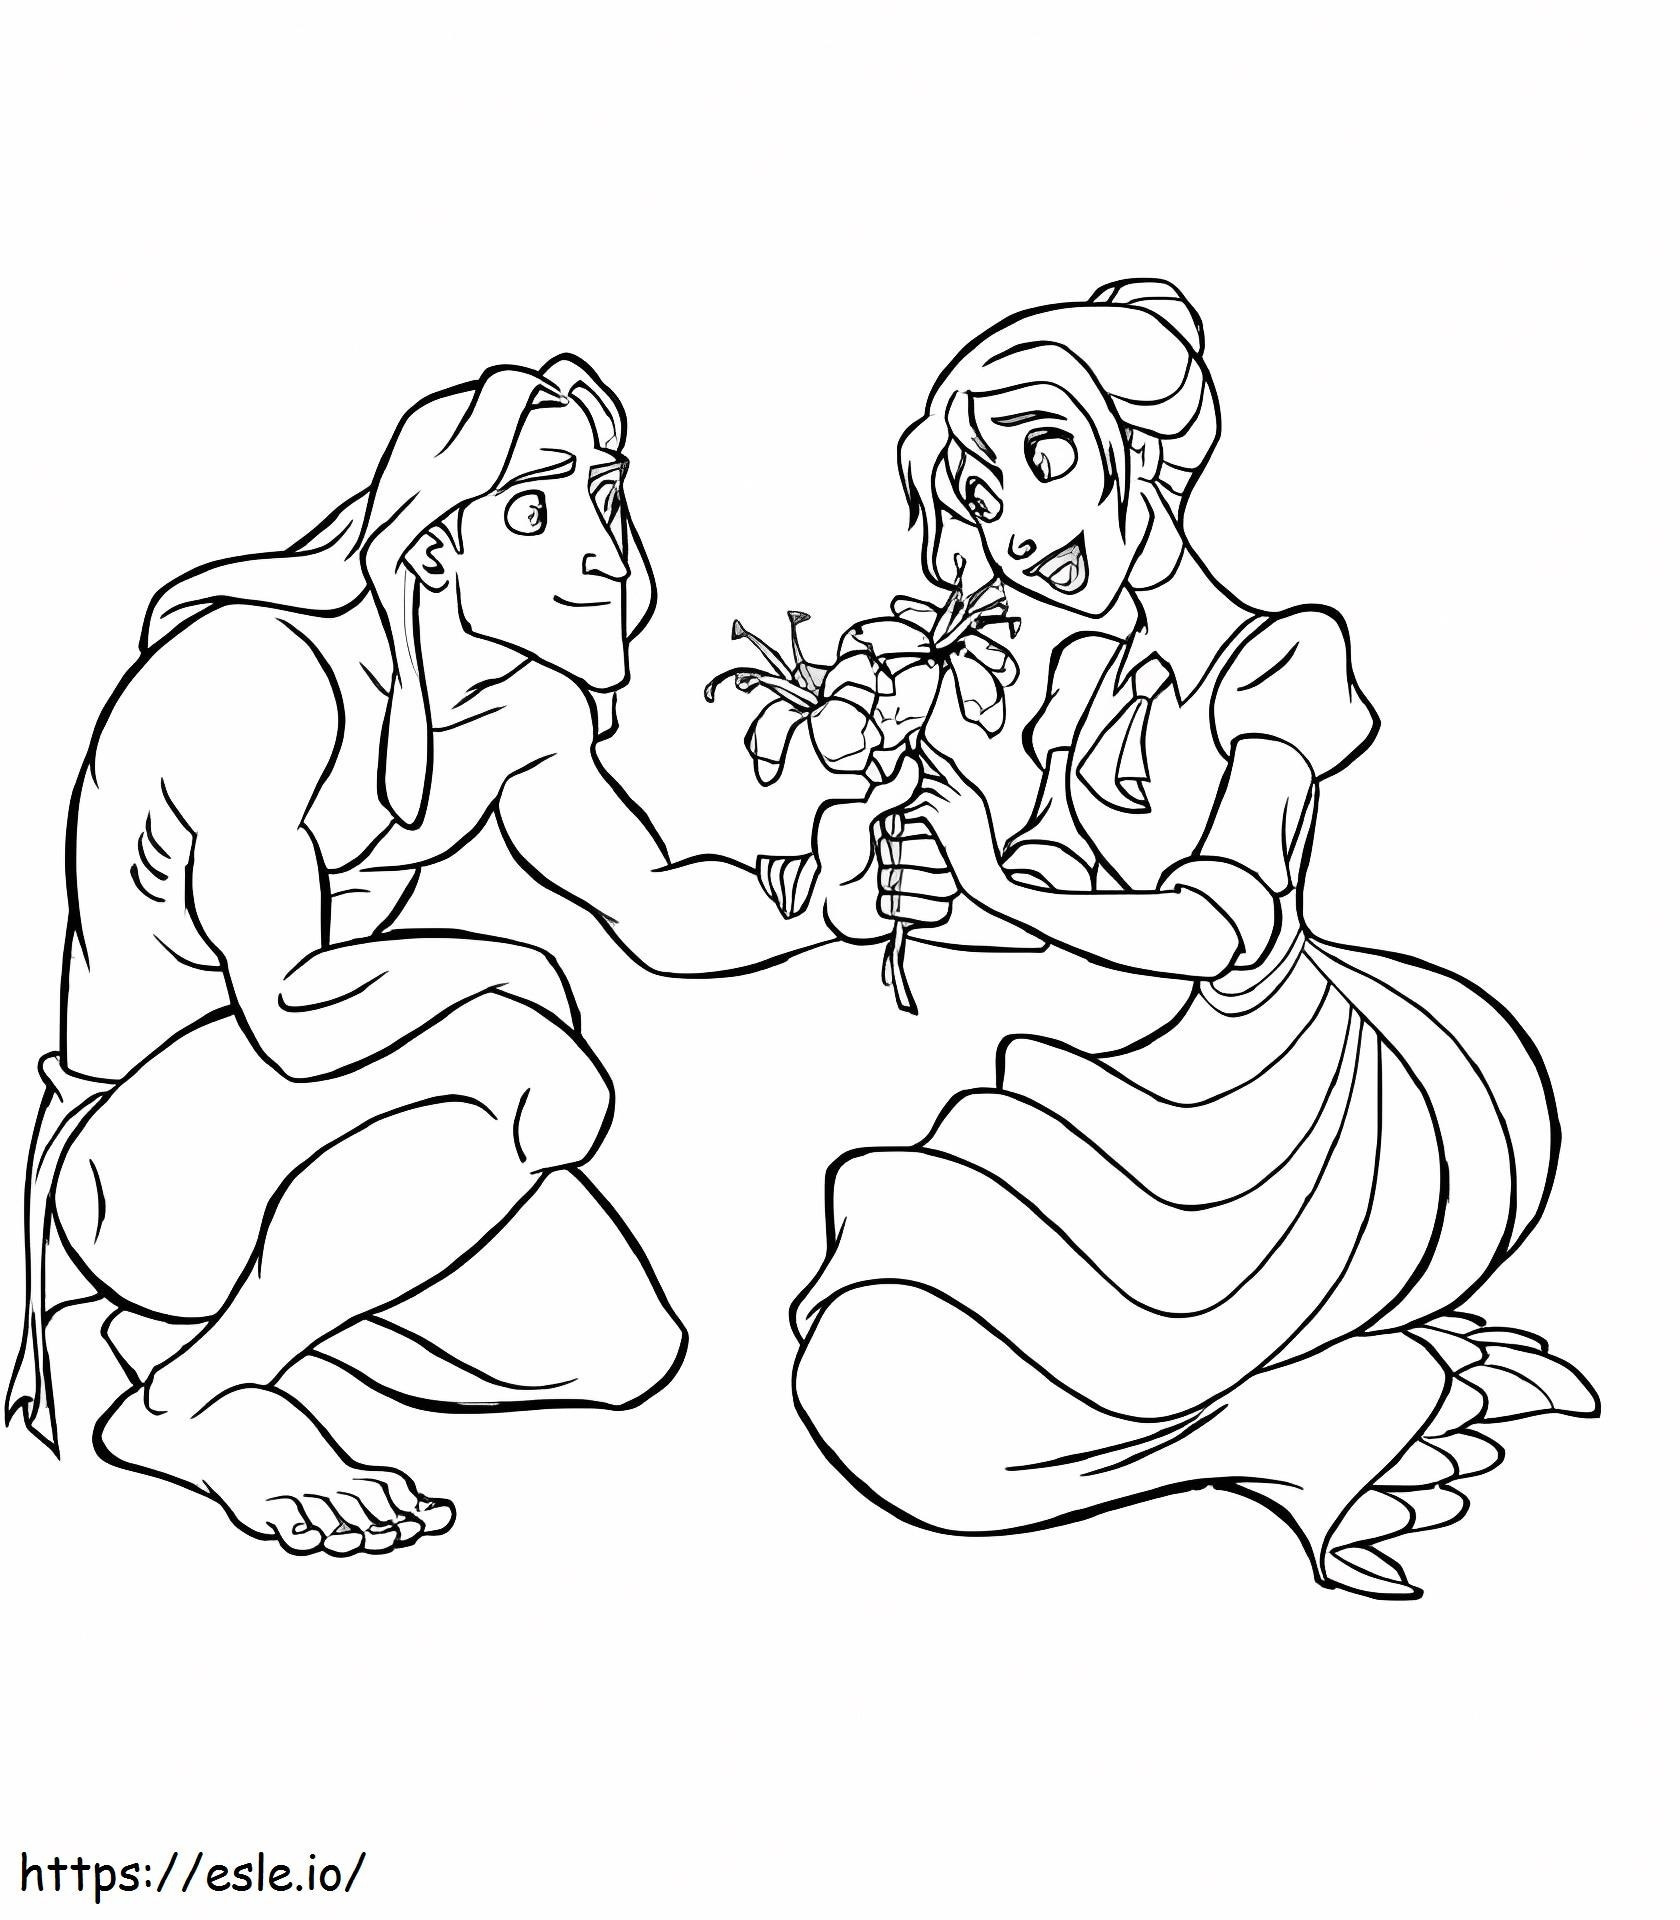 Tarzan ve Jane Çiçek Tutuyor boyama